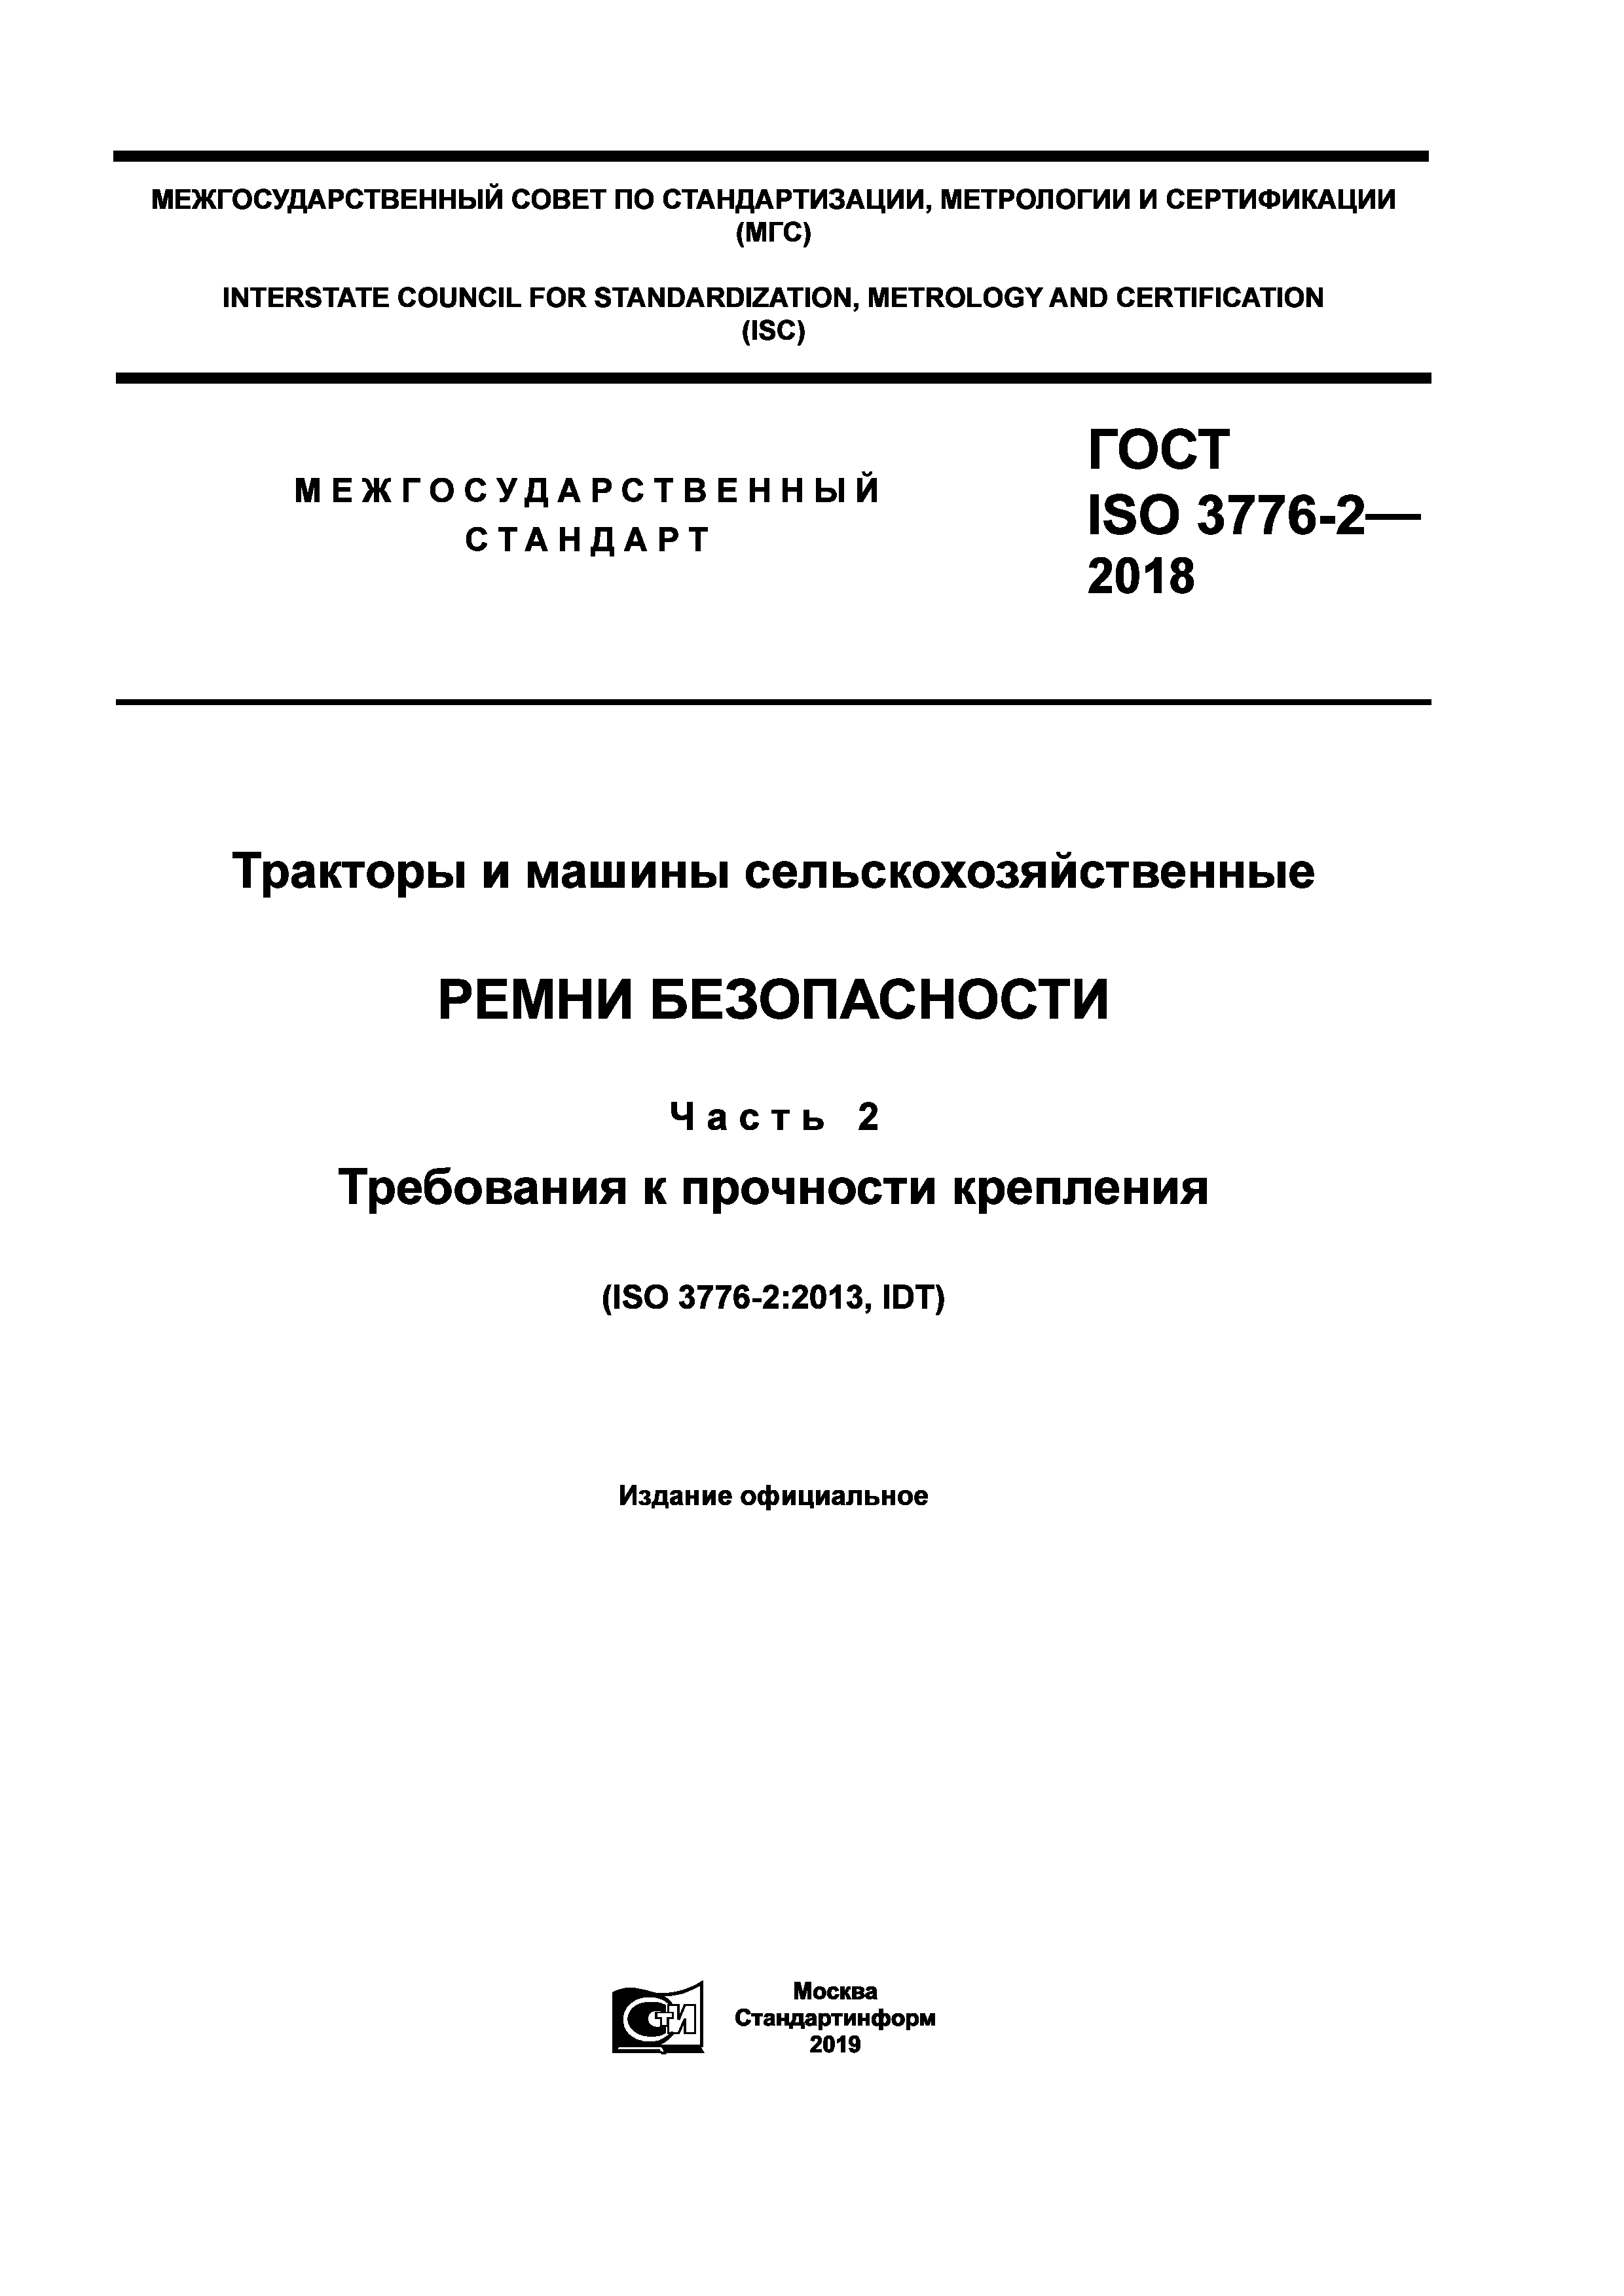 ГОСТ ISO 3776-2-2018